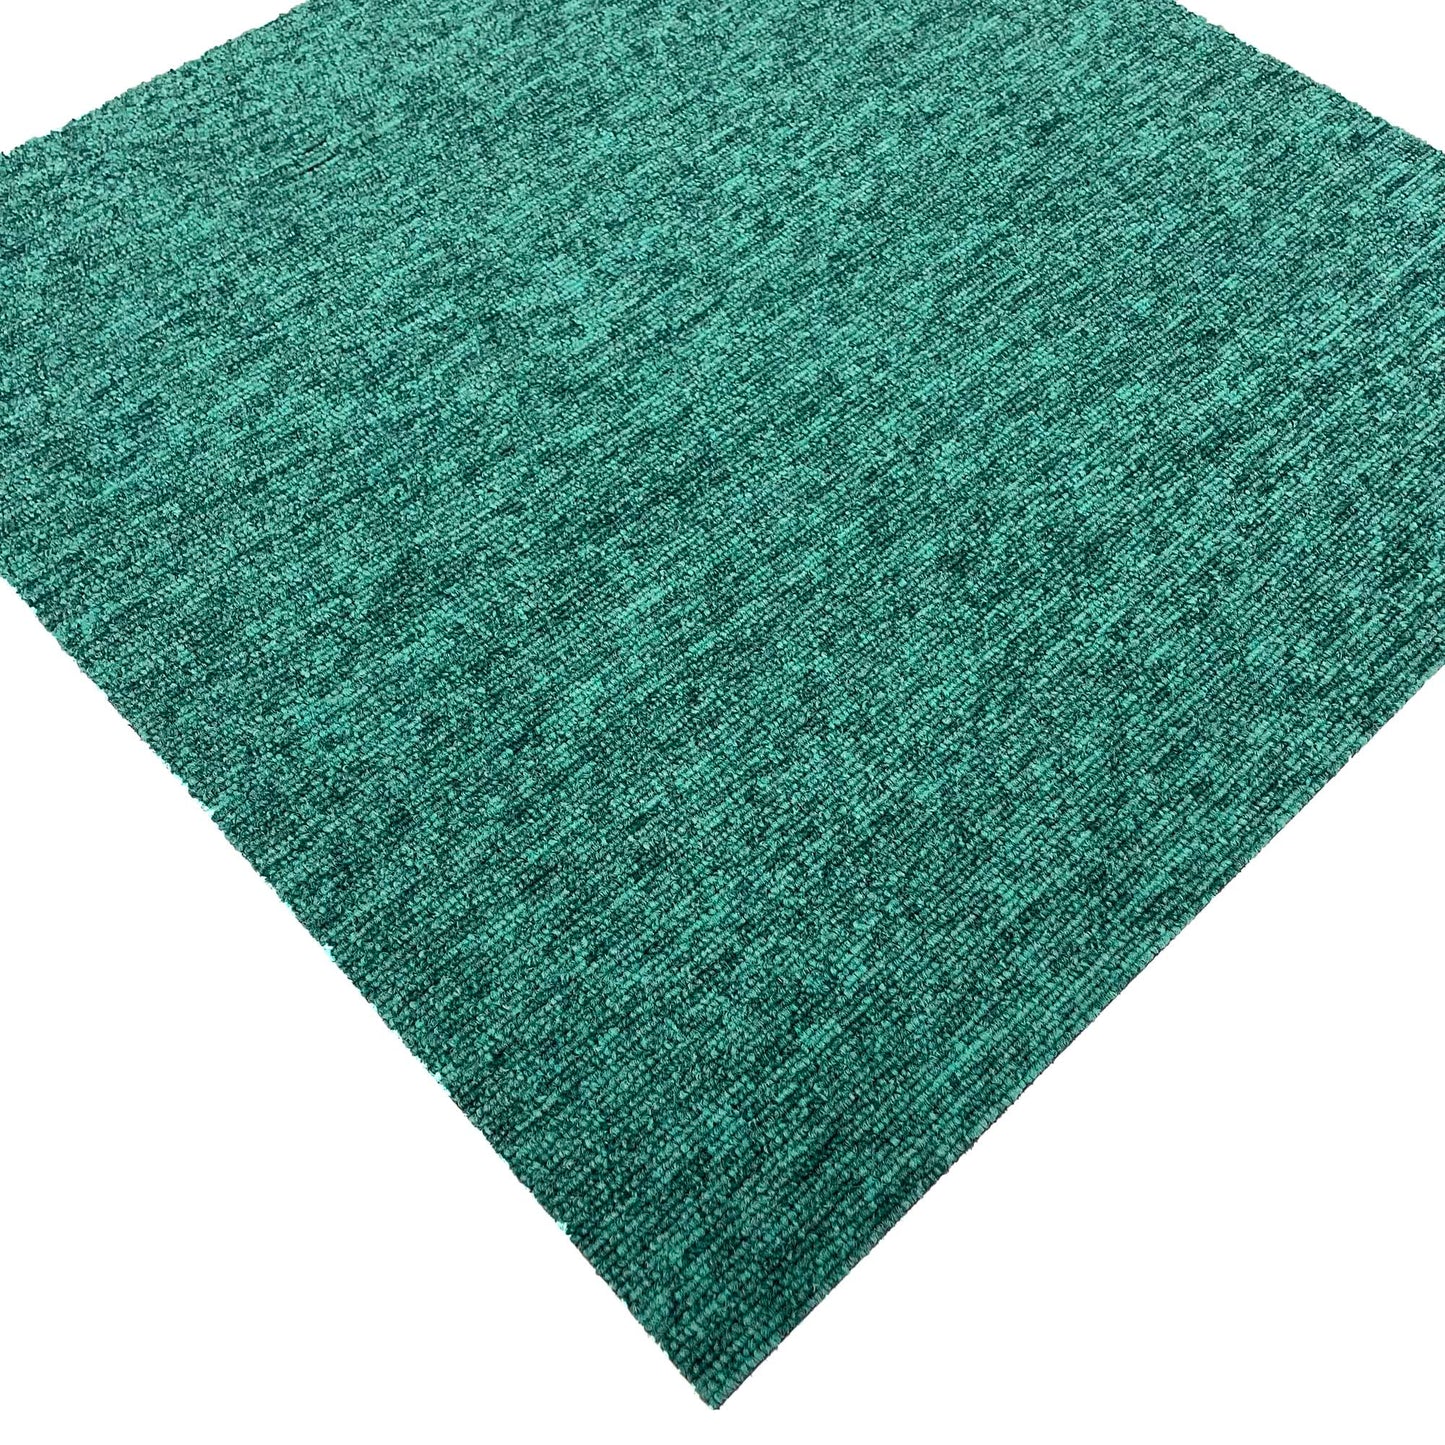 Teal Speckled Carpet Tiles